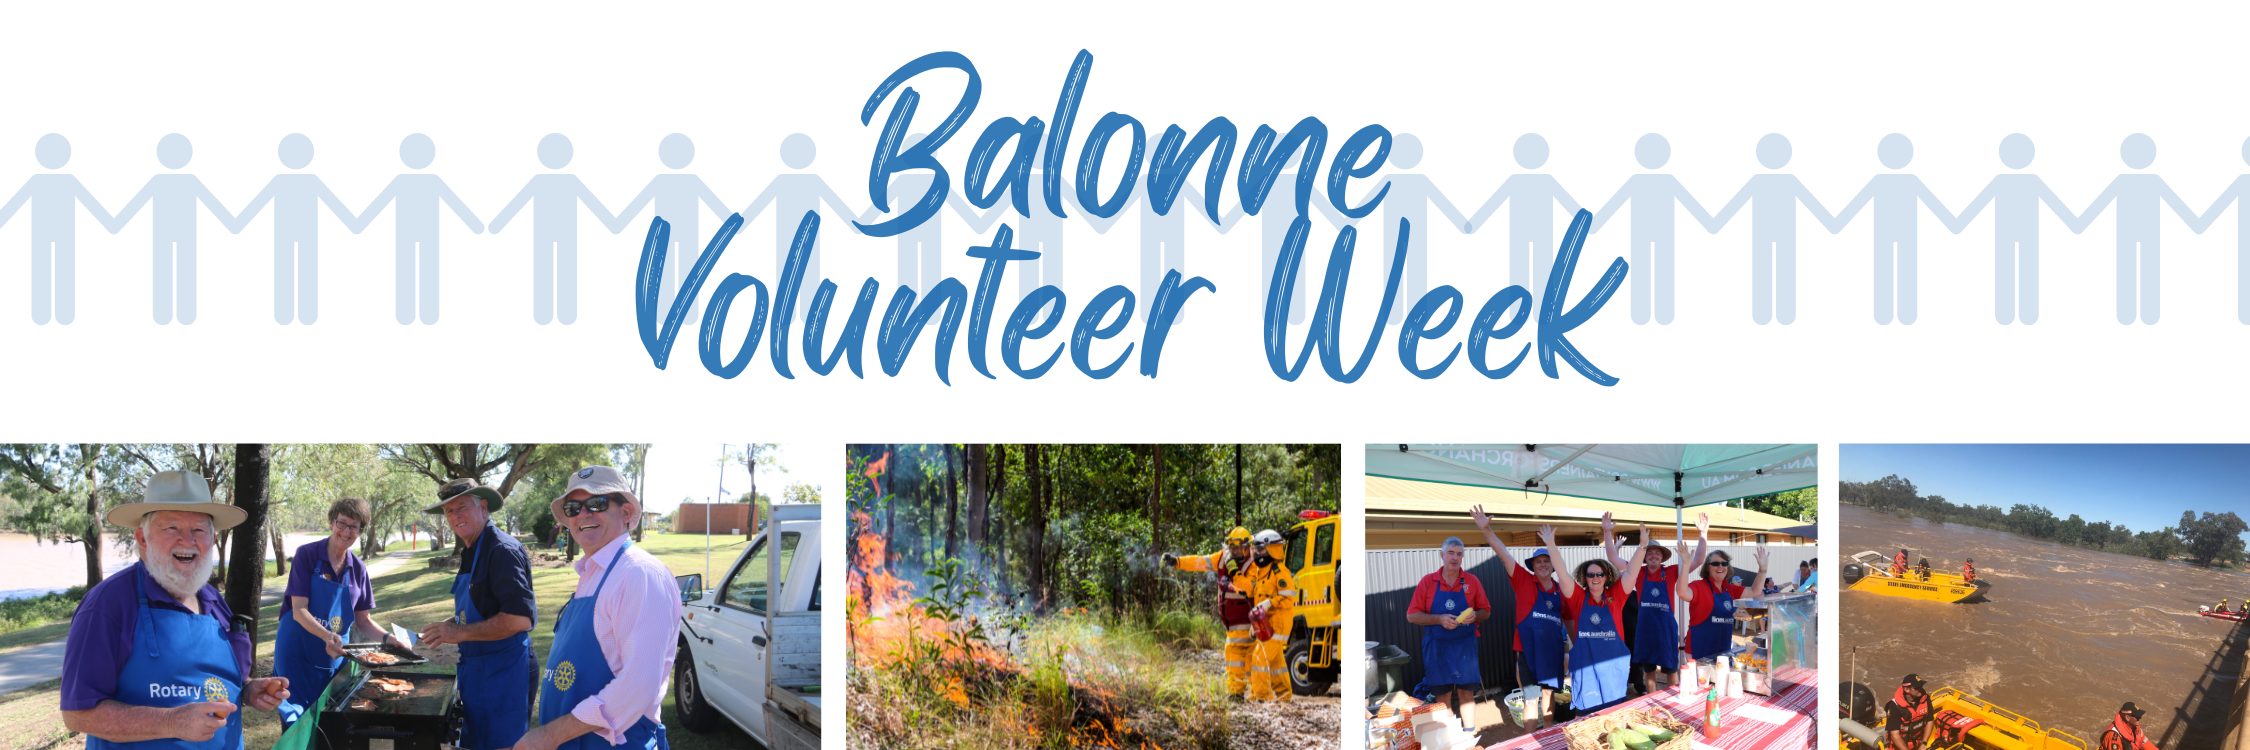 Balonne Volunteer Week Header